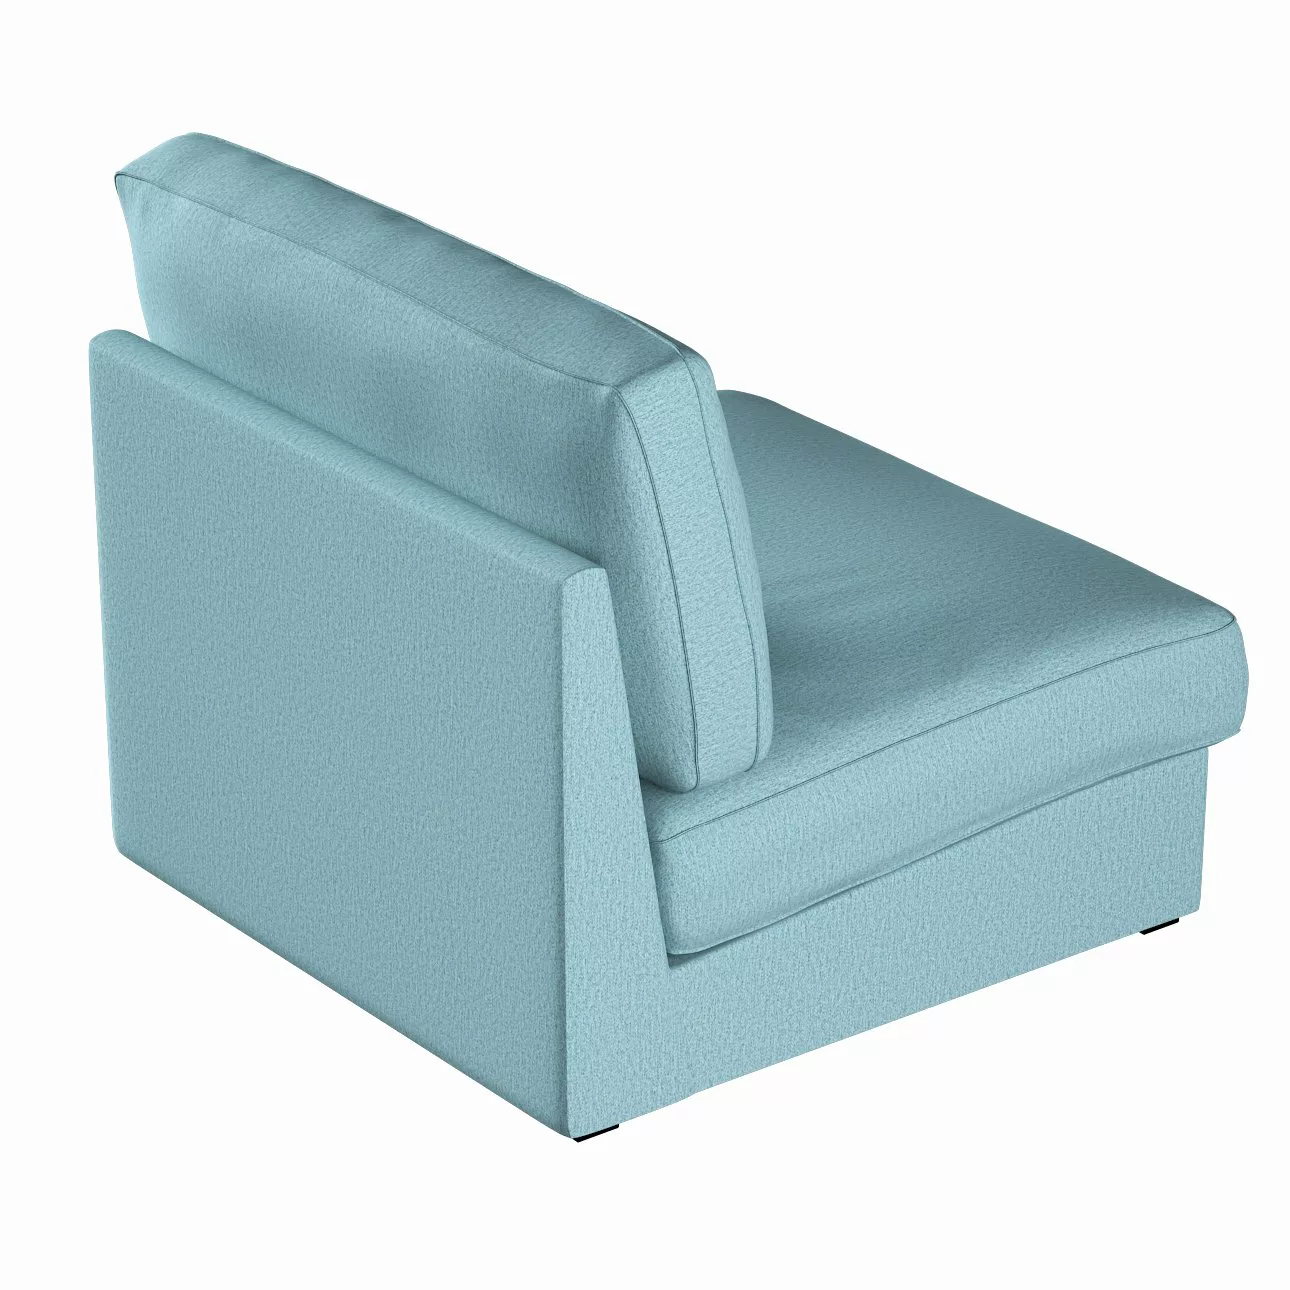 Bezug für Kivik Sessel nicht ausklappbar, blau, Bezug für Sessel Kivik, Mad günstig online kaufen